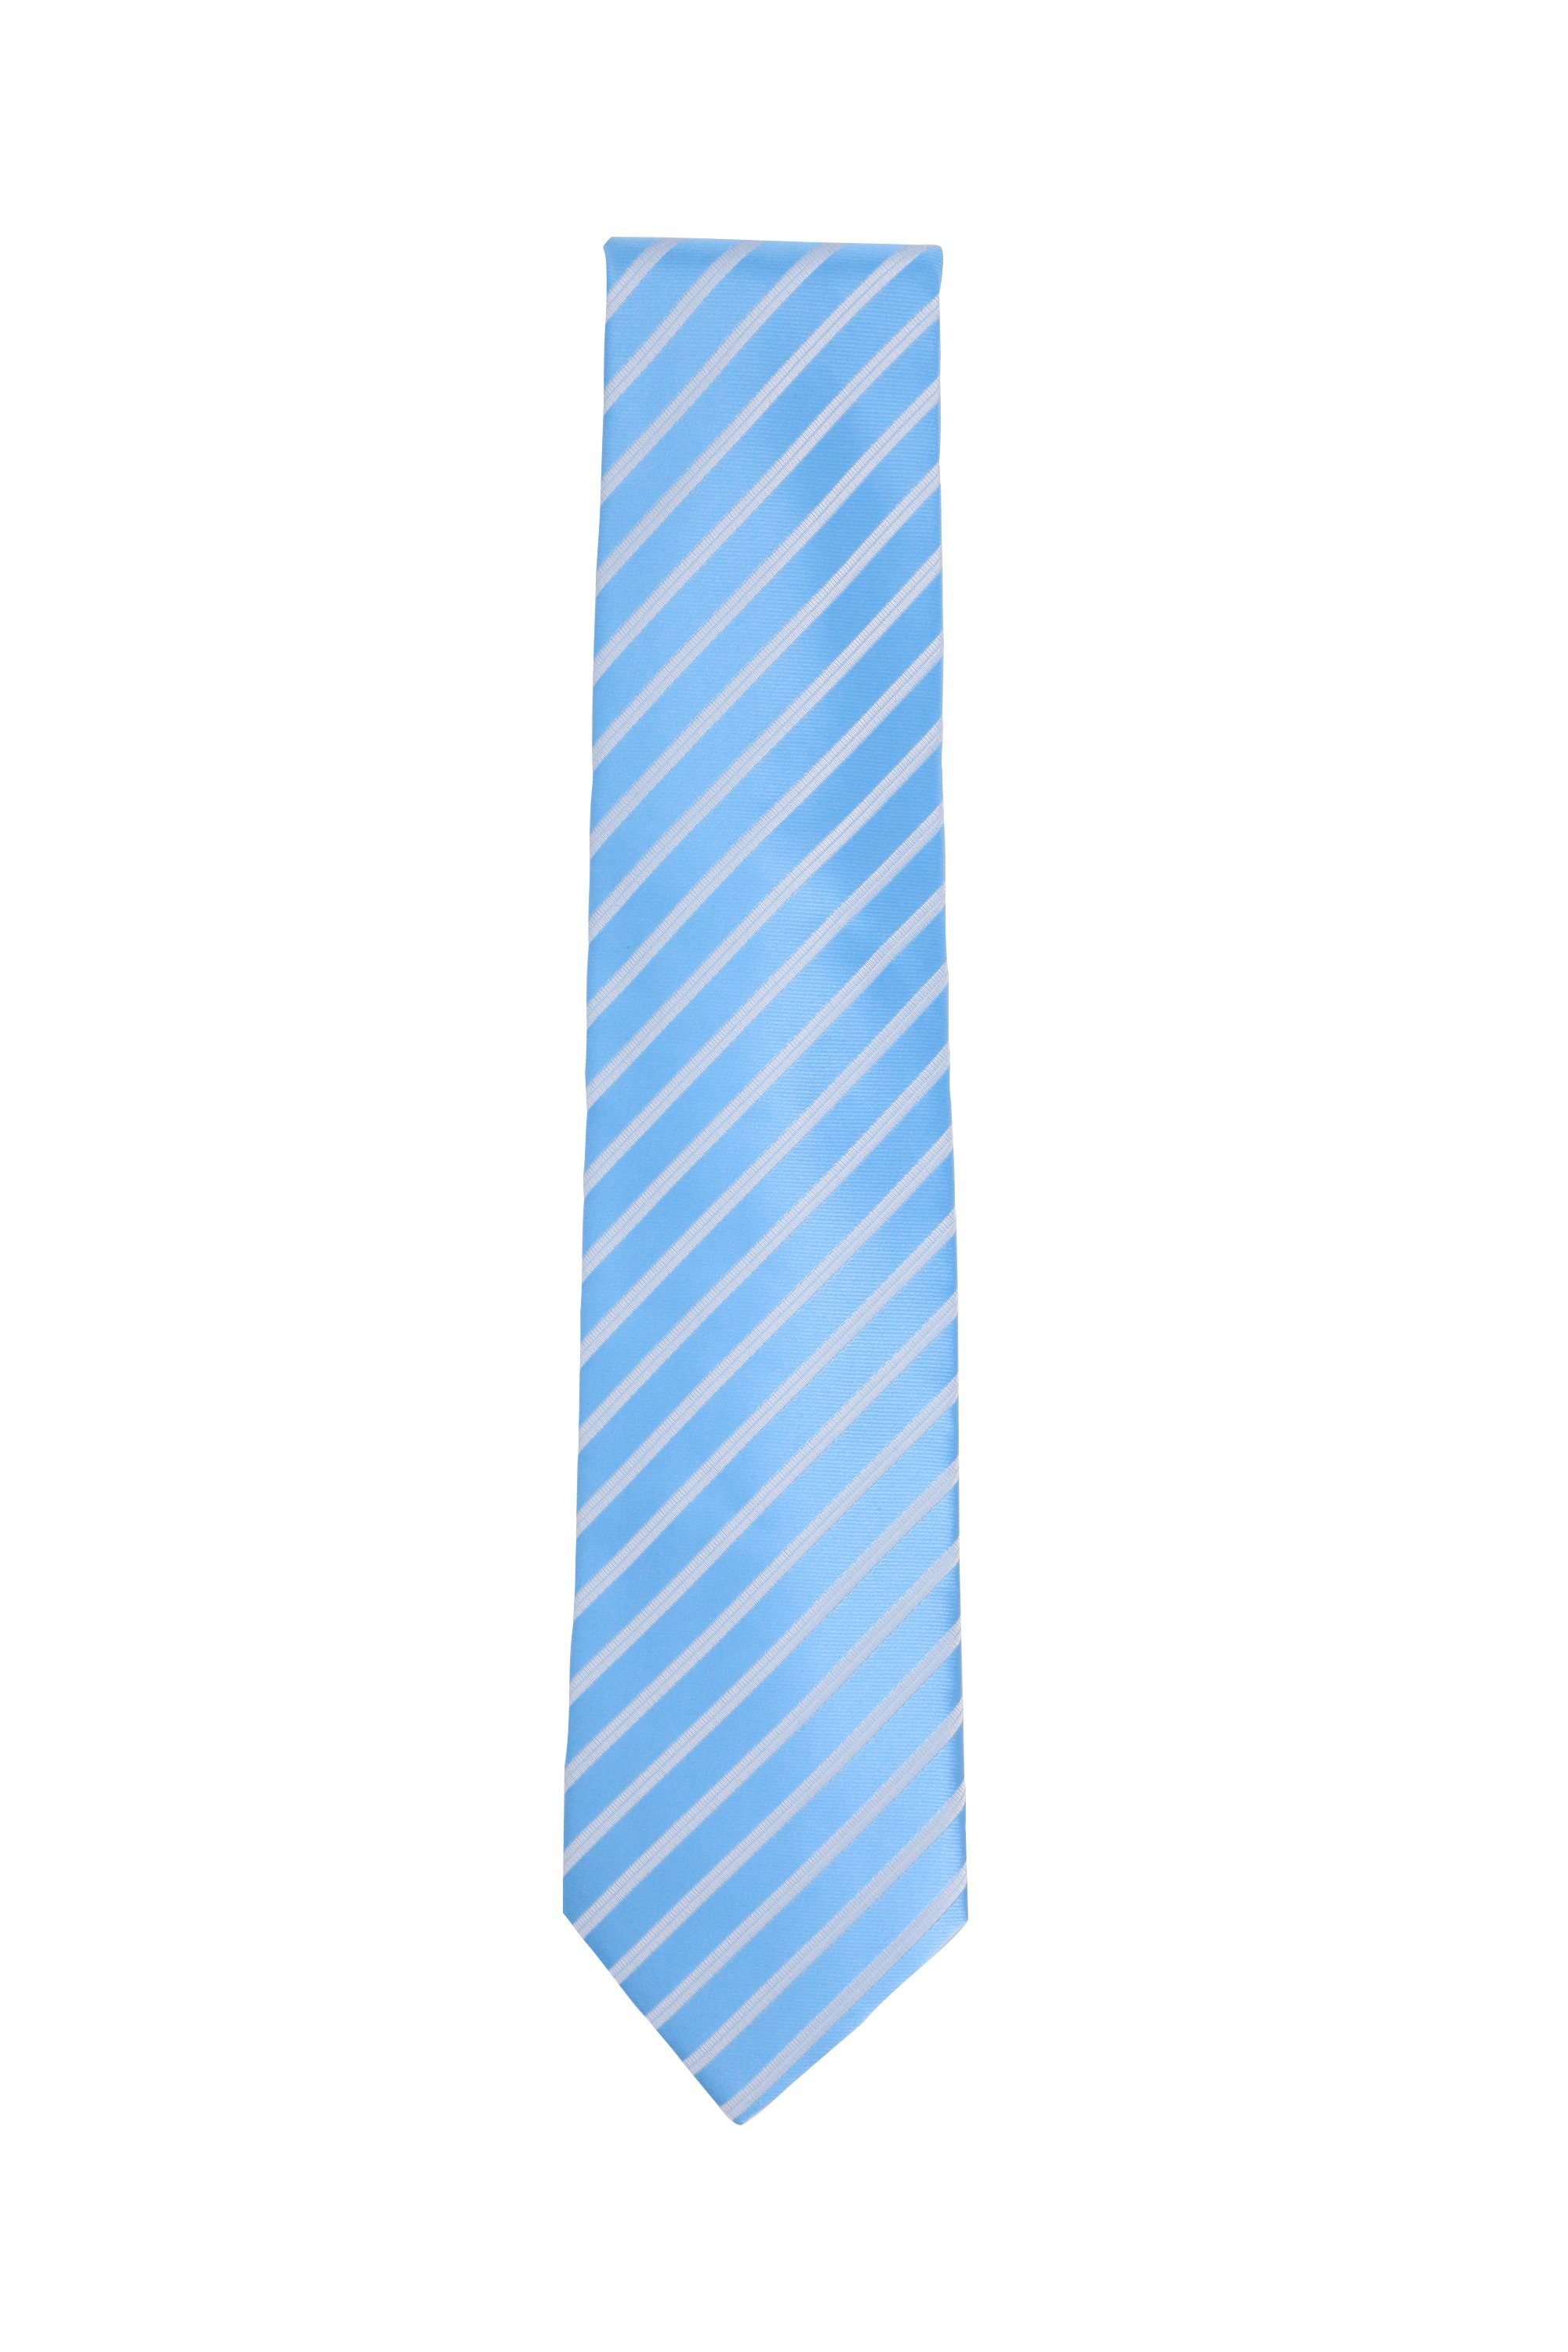 verschiedene Farini Fabio Silber - Streifen in 8cm Männer (8cm), Blautöne Blau Herren Breit Krawatte Gestreift) Schlips (ohne Box, Krawatte Sea - Blue/Silver Blaue